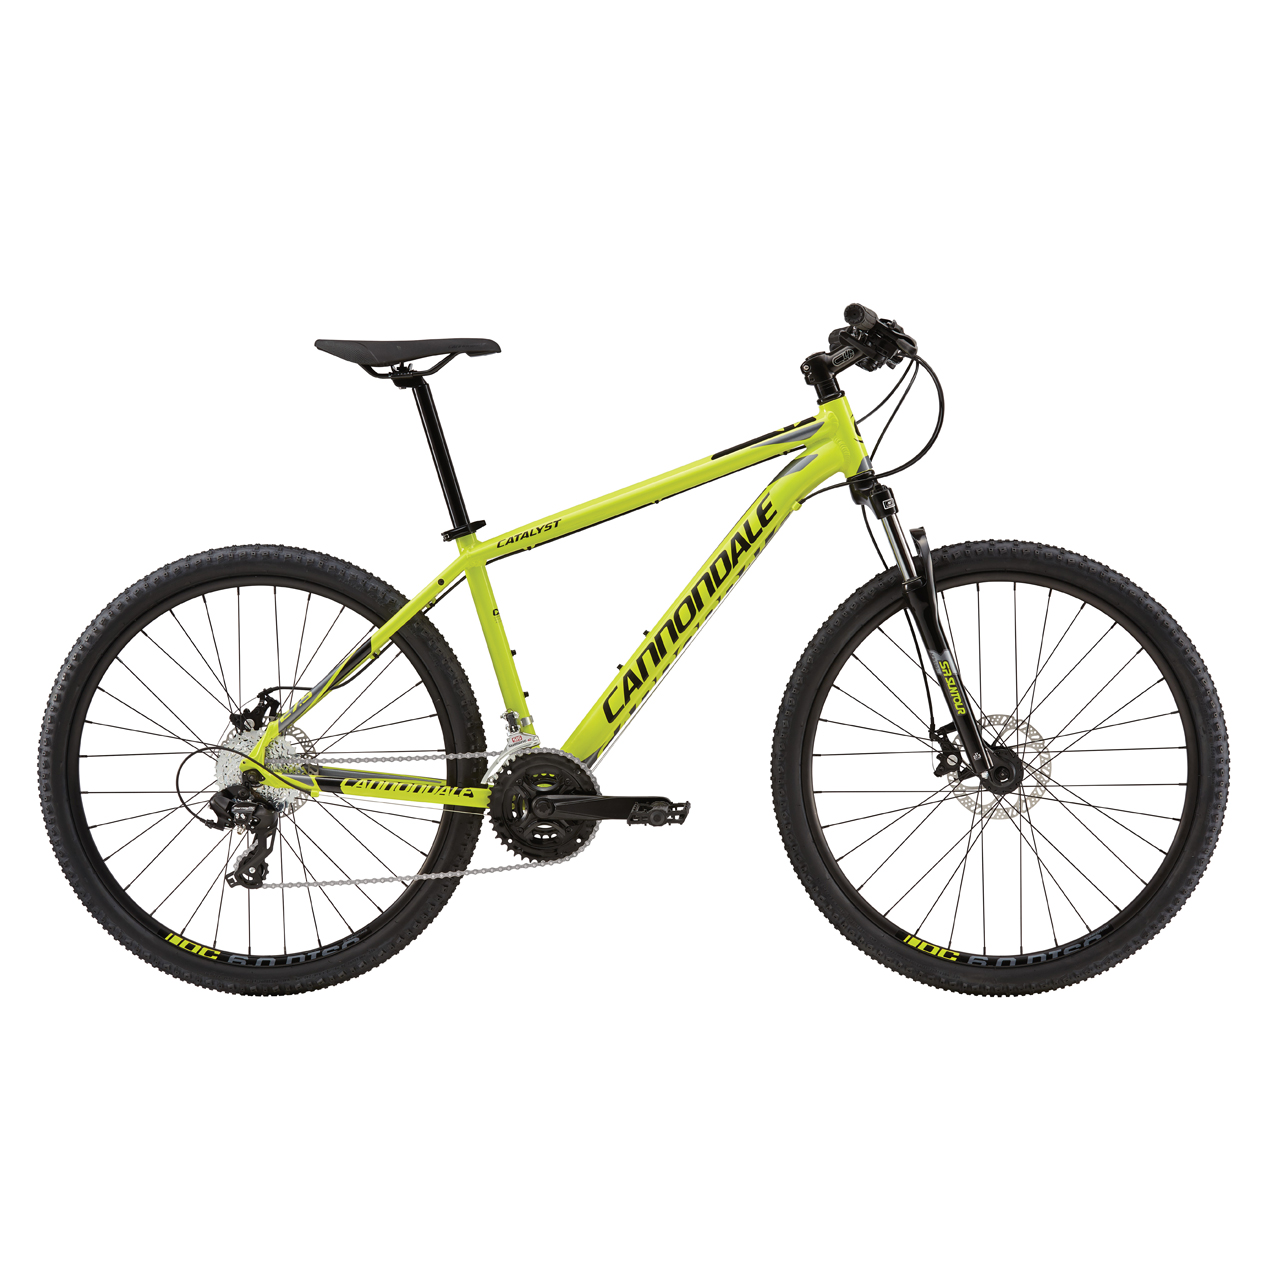 دوچرخه کوهستان کنندال Catalyst 3 سایز 27.5 رنگ زرد2017